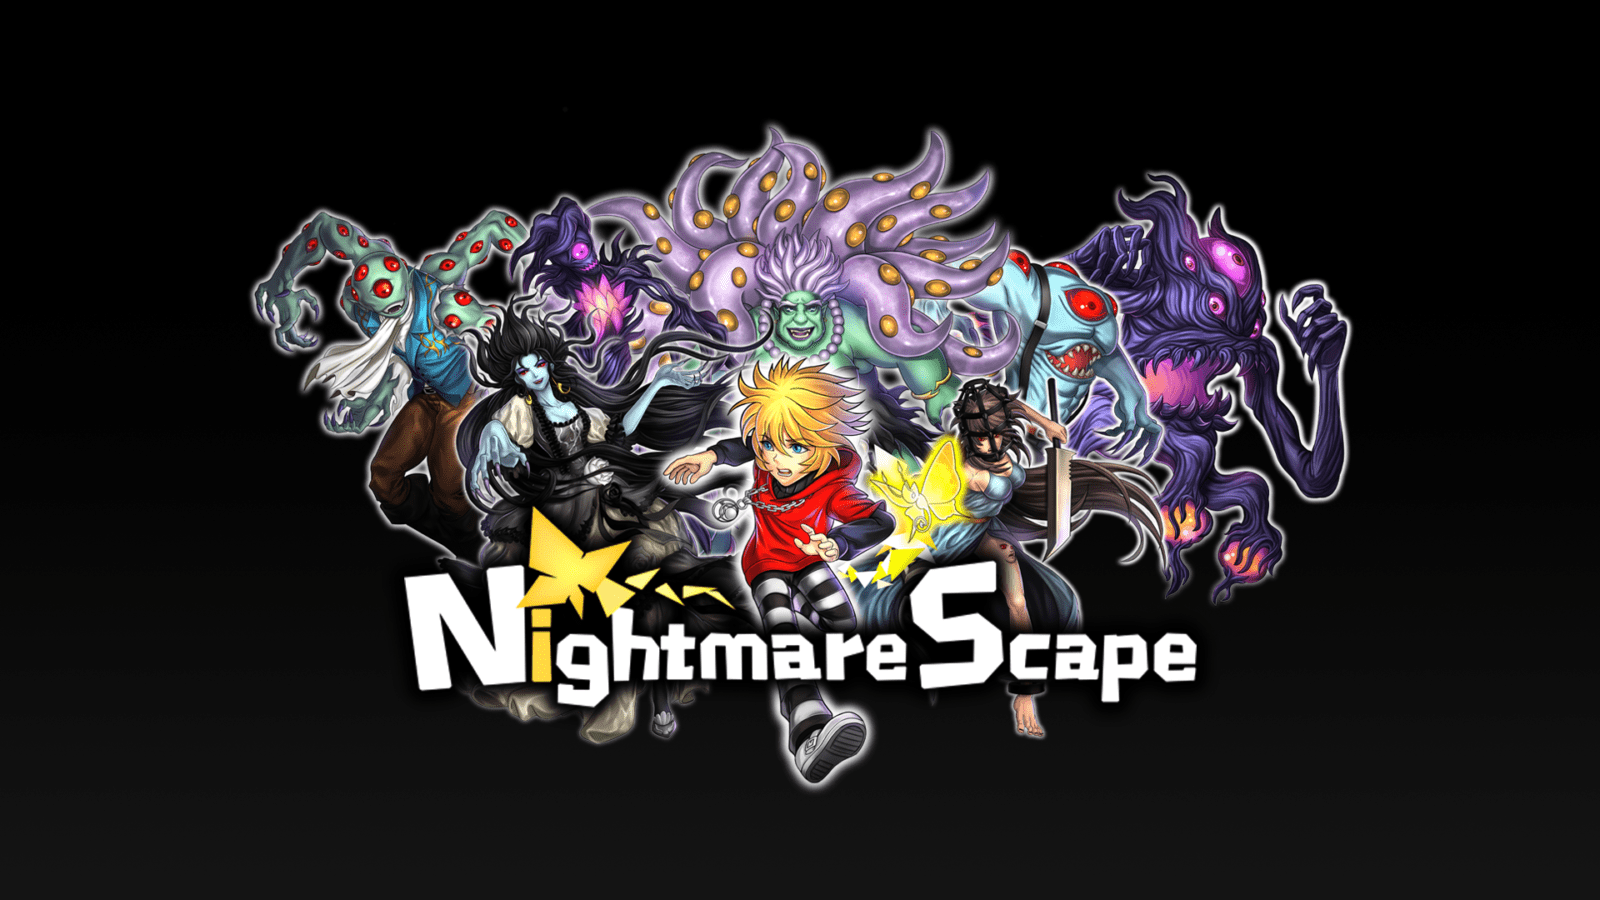 NightmareScape - Enfrente seus medos e vença seus traumas numa realidade onde os monstros estão a sua espera